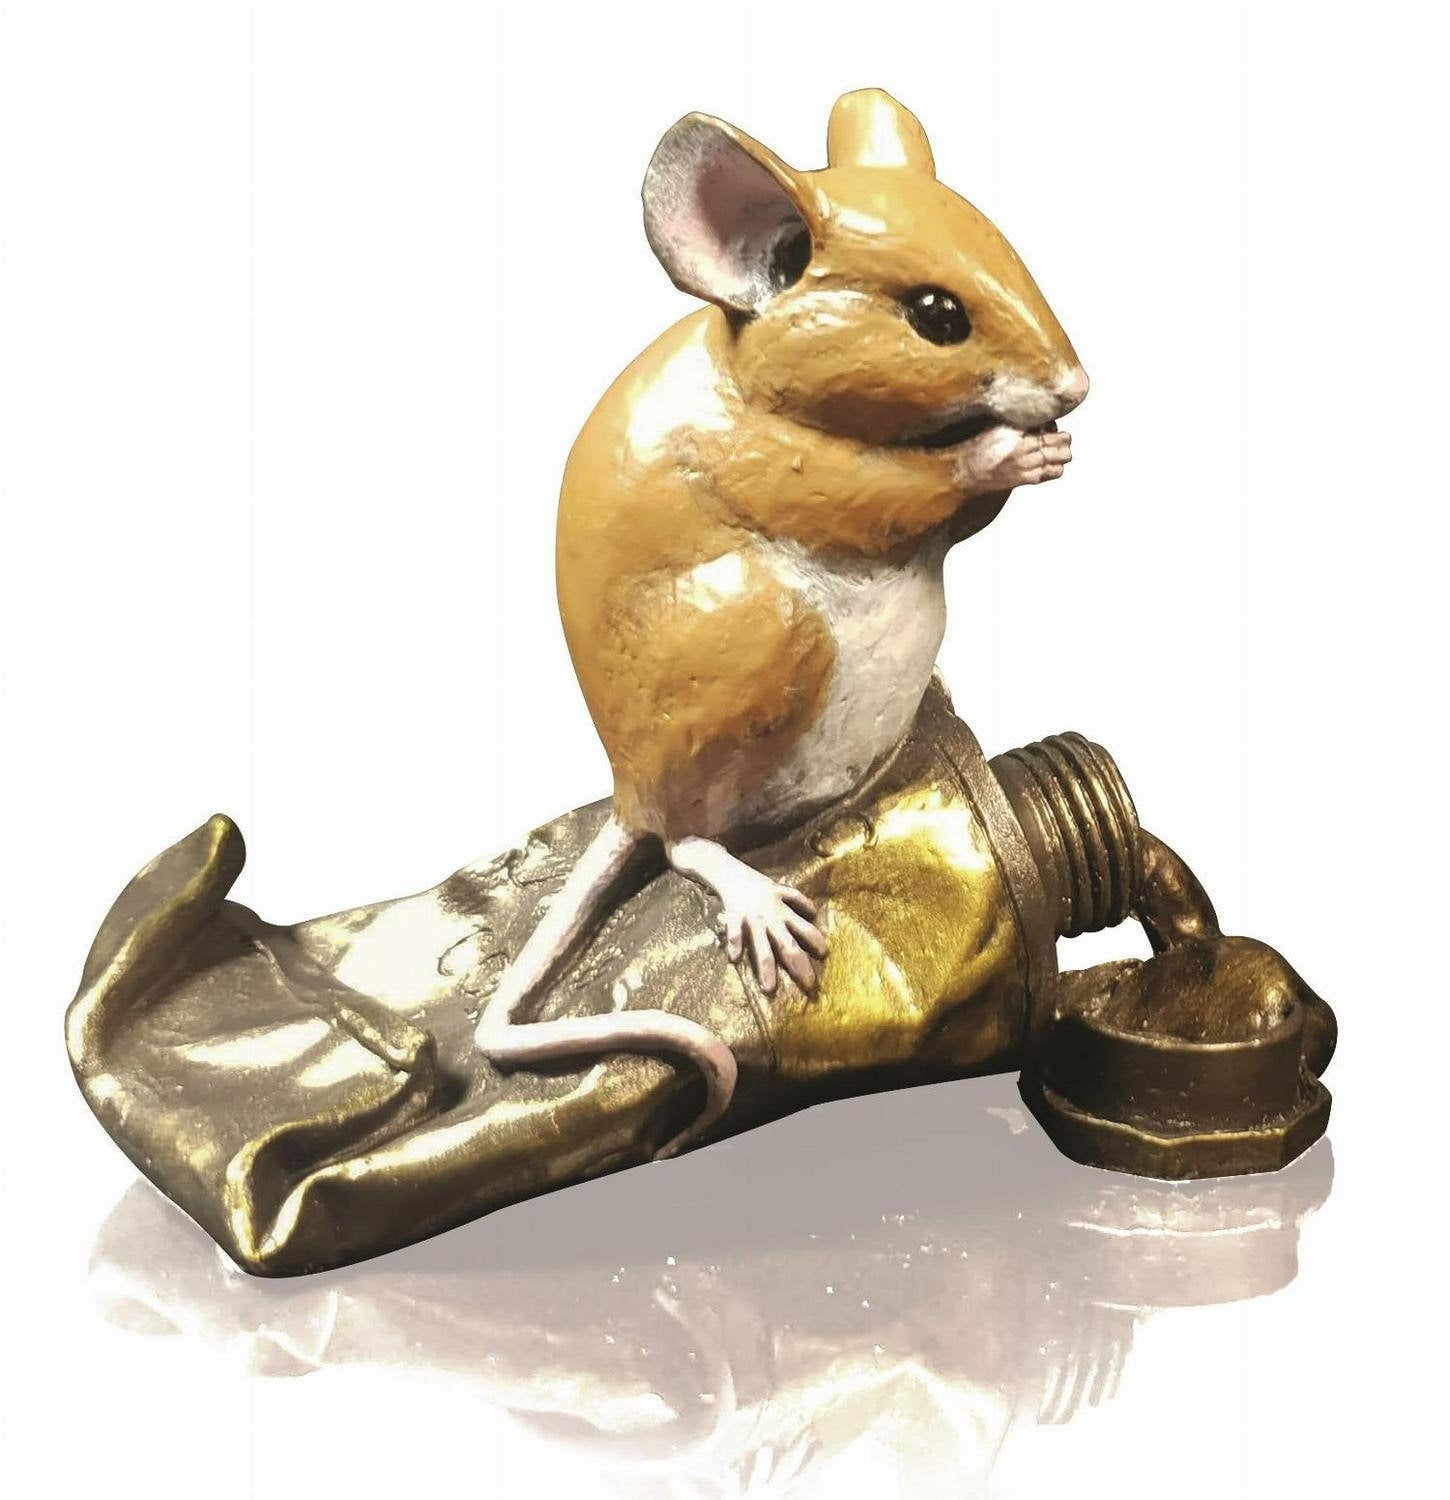 Mouse on paint tube bronze figurine michael simpson bronze sculpture home decor